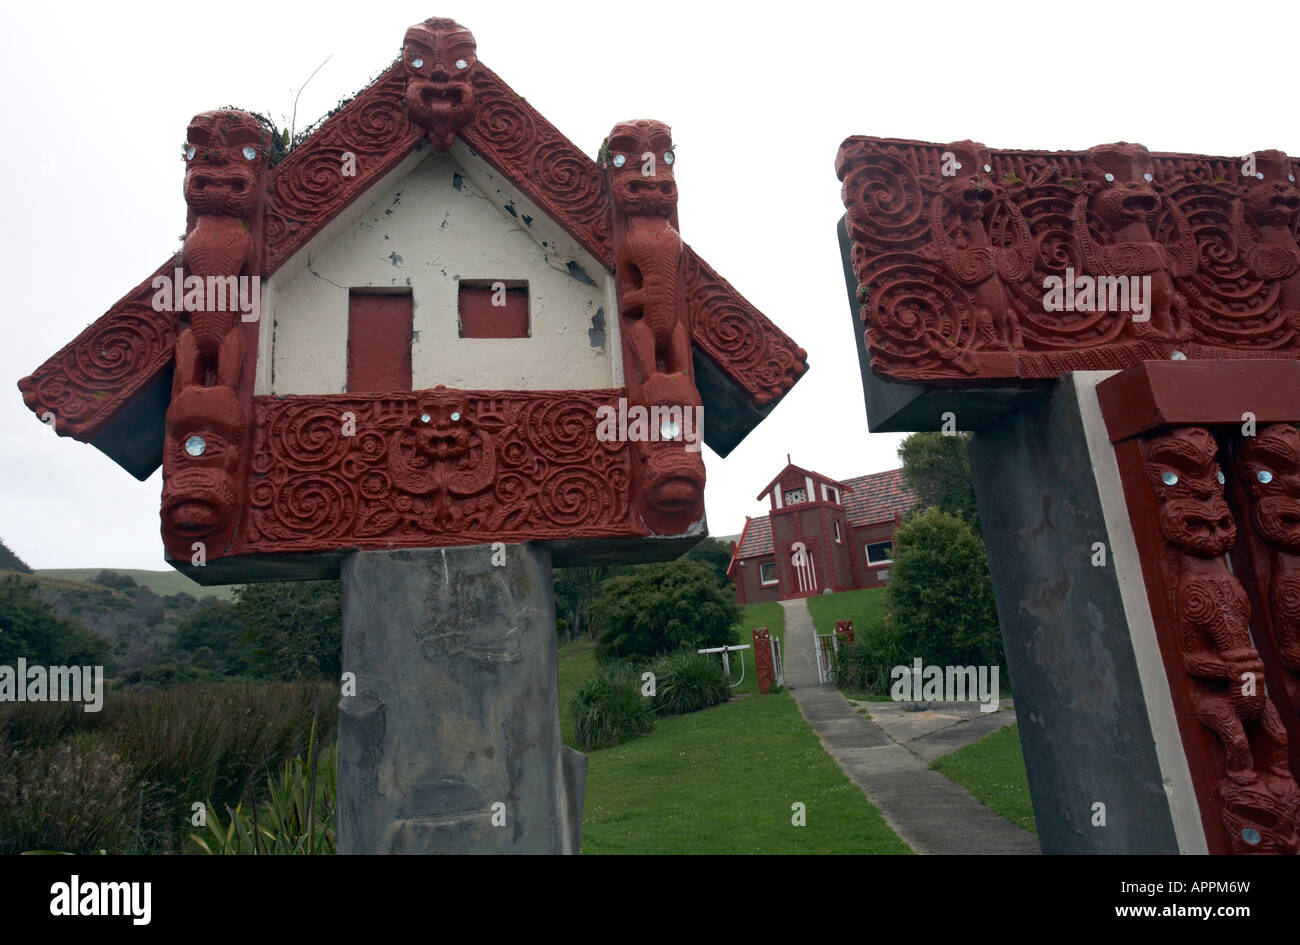 Entrée de l'établissement Maori, près de l'Otakau Marae, la péninsule d'Otago, île du Sud, Nouvelle-Zélande Banque D'Images